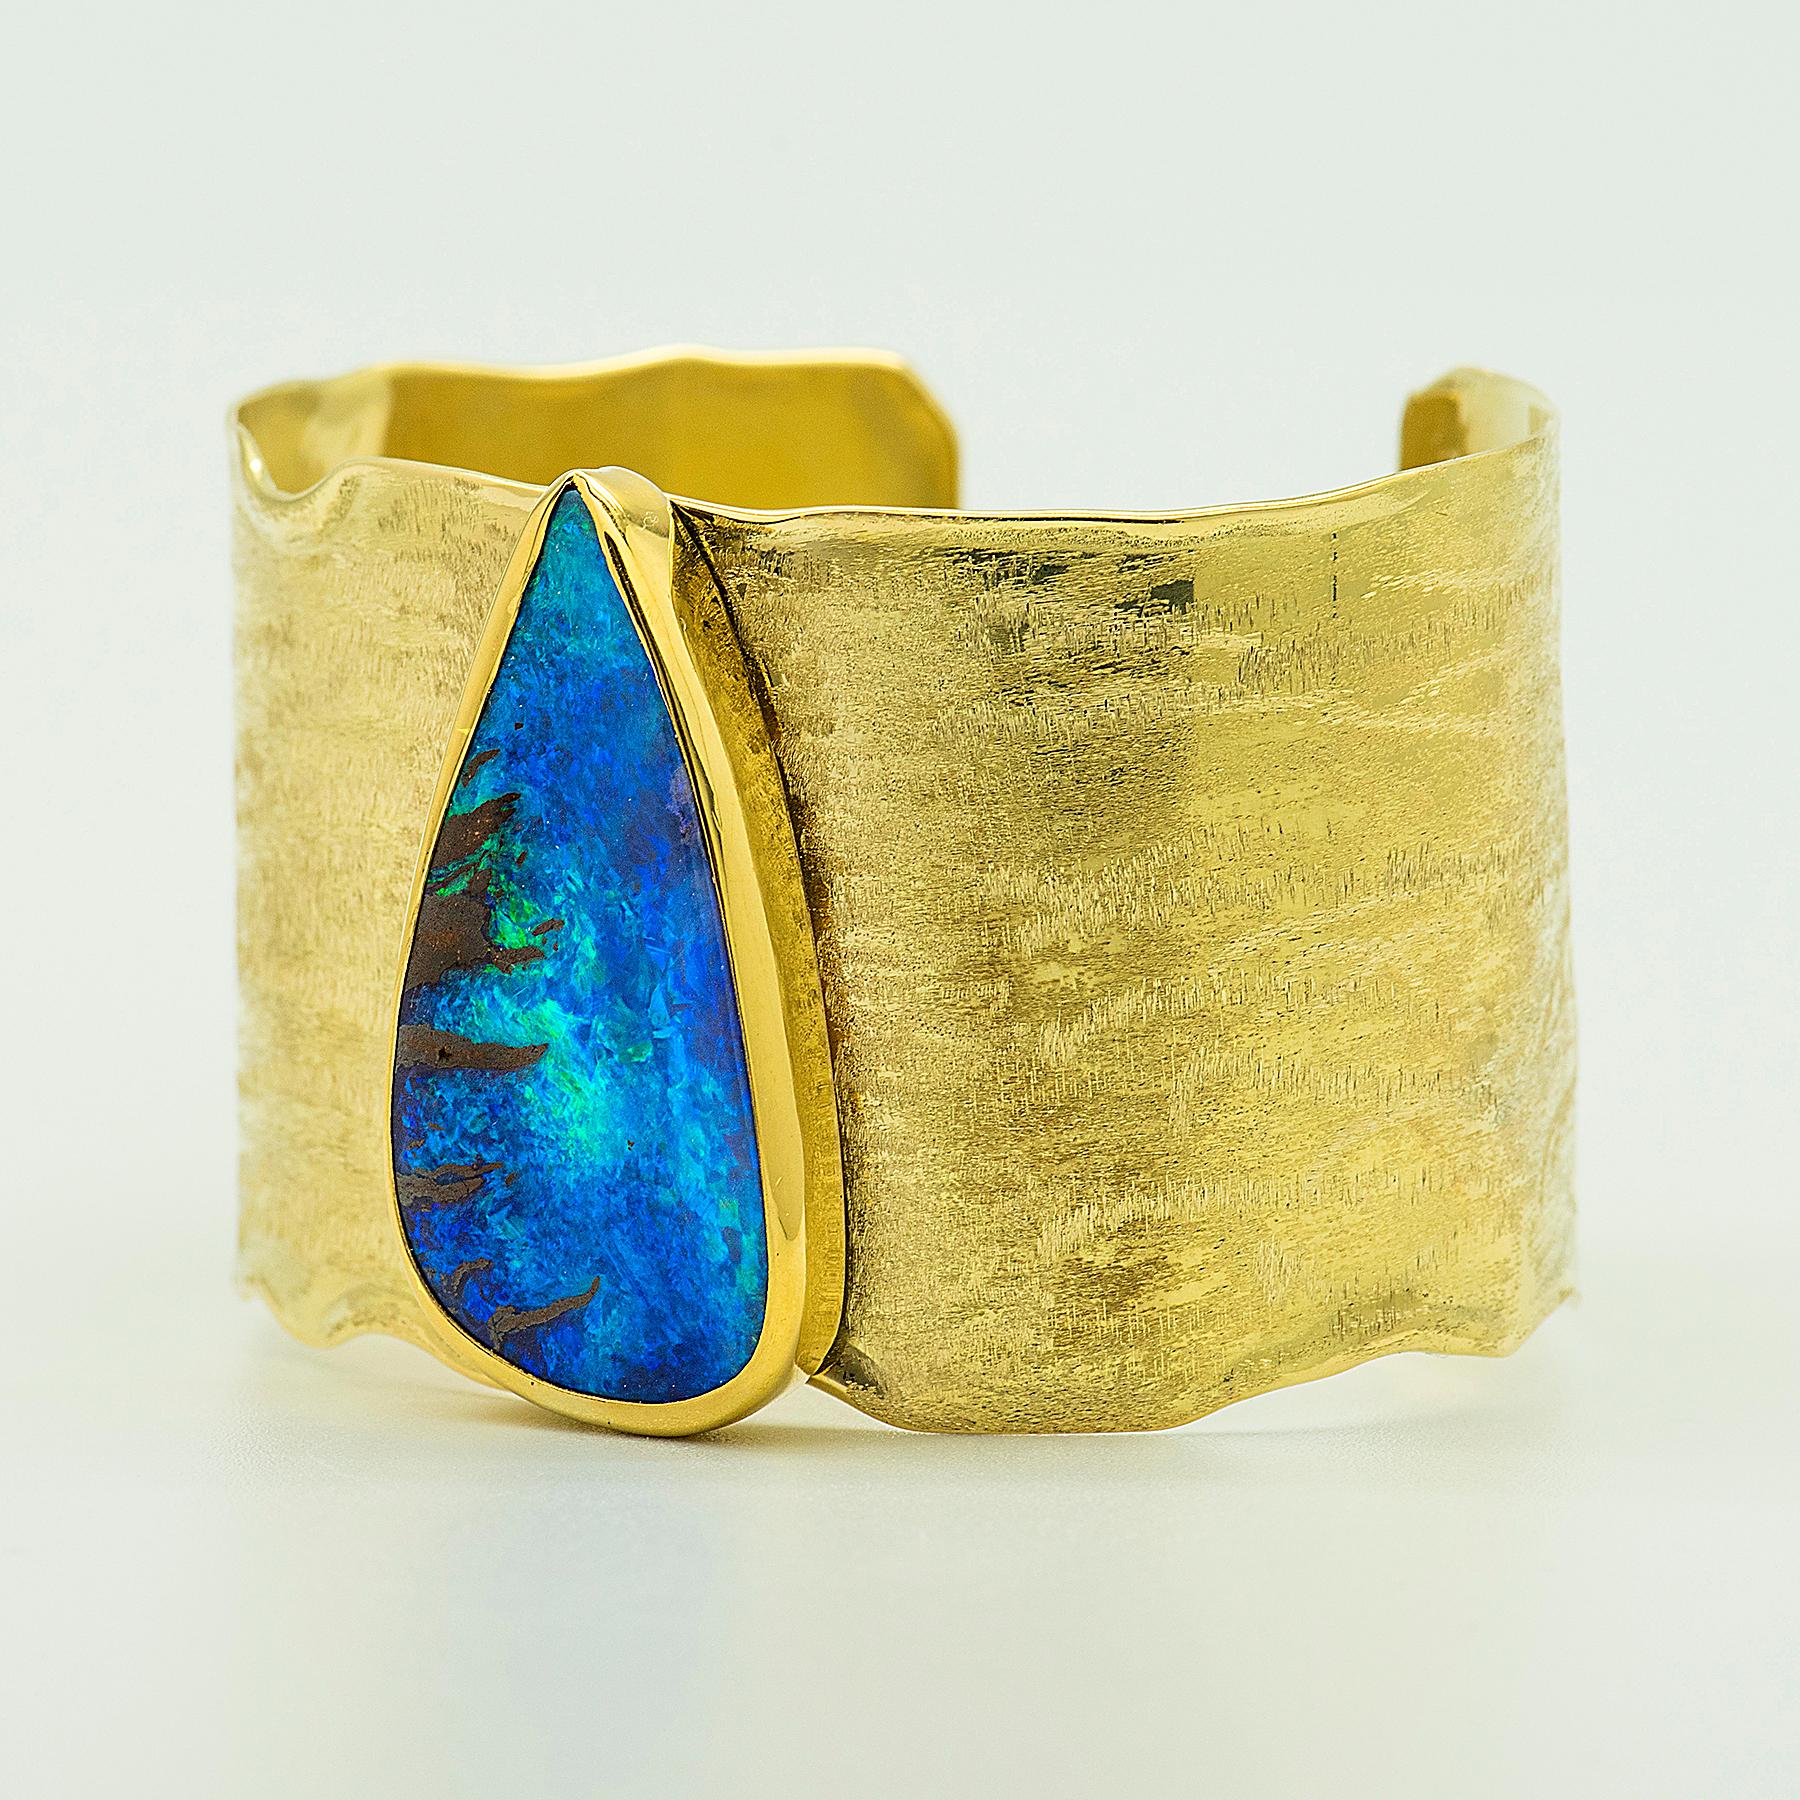 Boulder Opal Manschettenarmband aus 22k Gold und 18k Gold.  Boulder-Opal stammt aus Queensland, Australien, vor allem aus dem Gebiet von Winton.  Dieser blaugrüne Boulder-Opal ist eine klassische Farbe,  die Schokoladenmatrix, die auf der linken